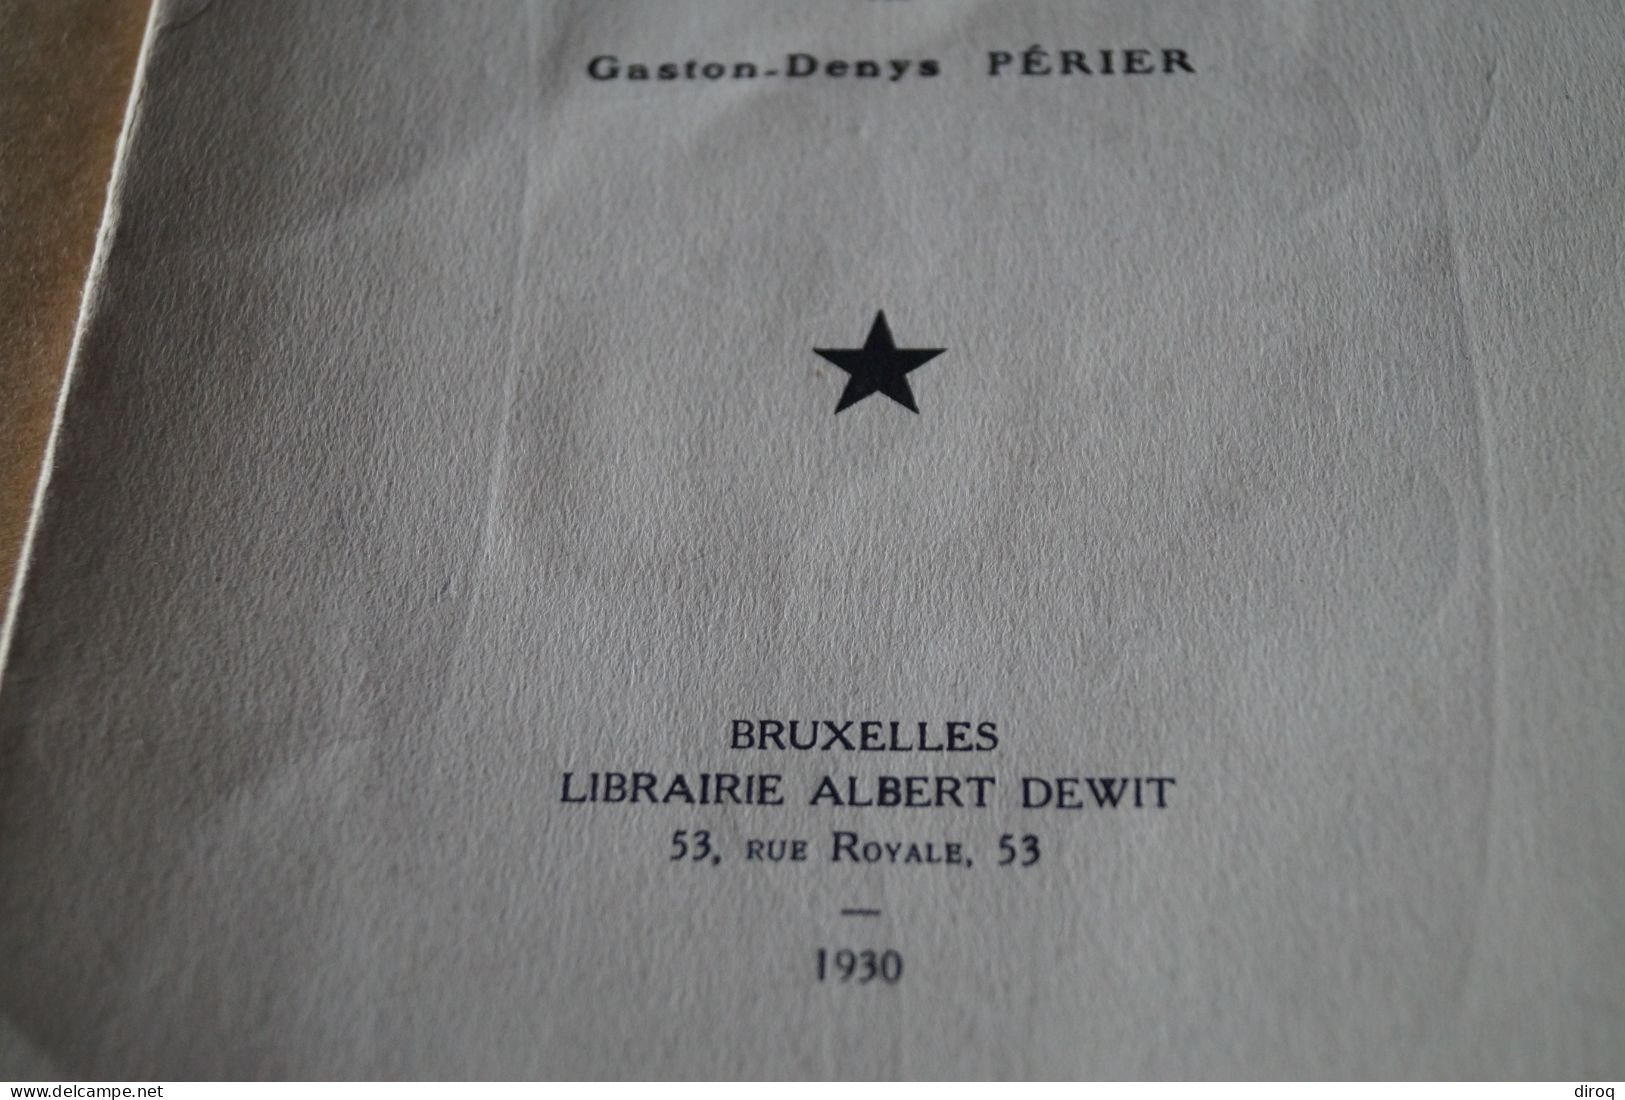 Congo Belge,1930,notes De Littérature Coloniale,Gaston-Denys Périer,54 Pages,25,5 Cm. Sur 17 Cm. - Non Classés